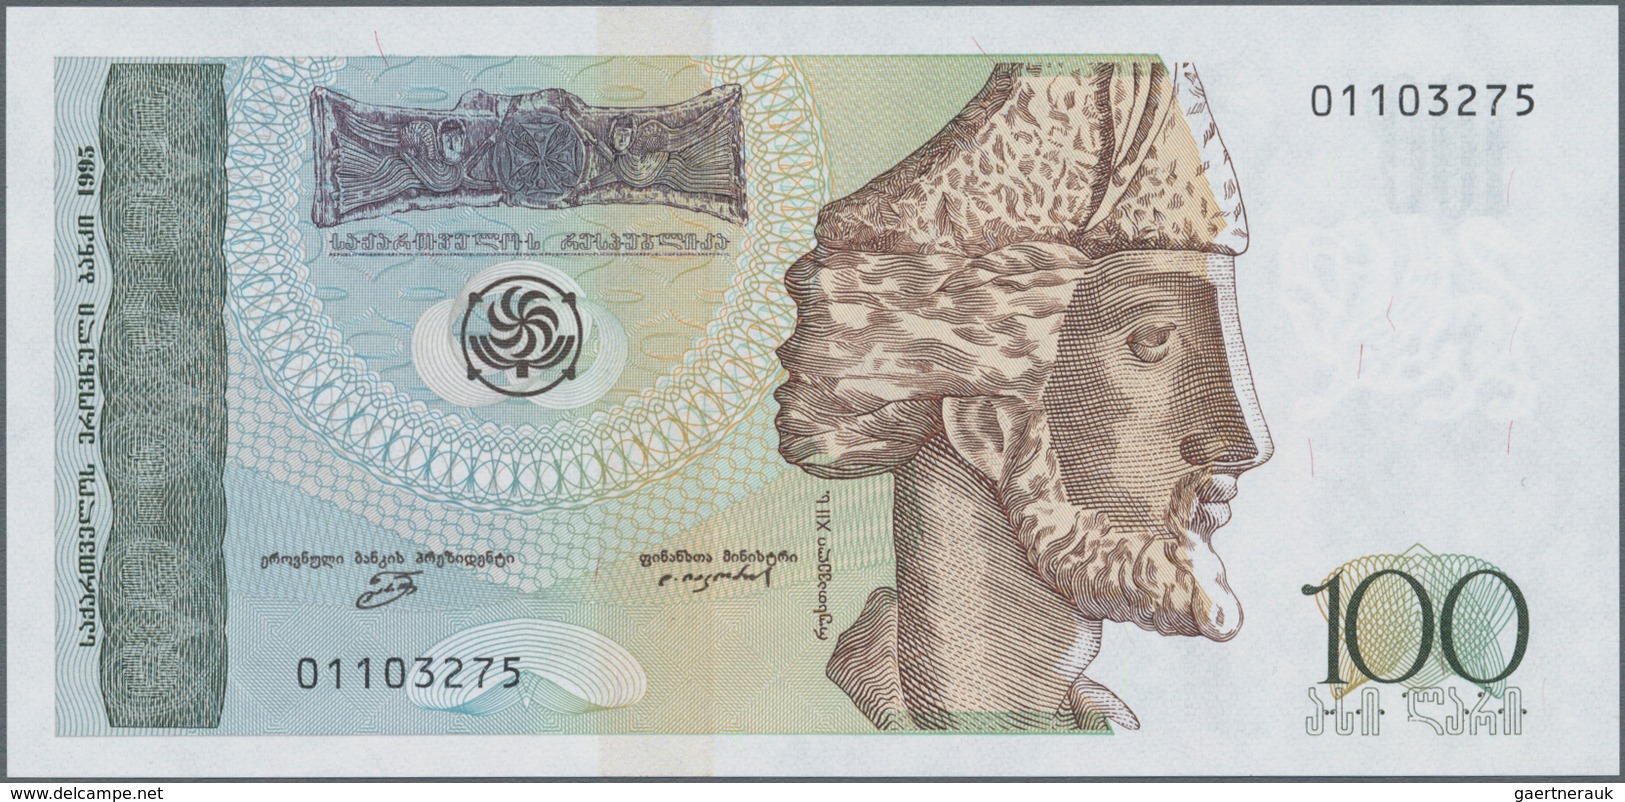 Georgia / Georgien: Set With 3 Banknotes 50 And 100 Lari 1995 And 100 Lari 2016 P.80, All In Perfect - Georgië